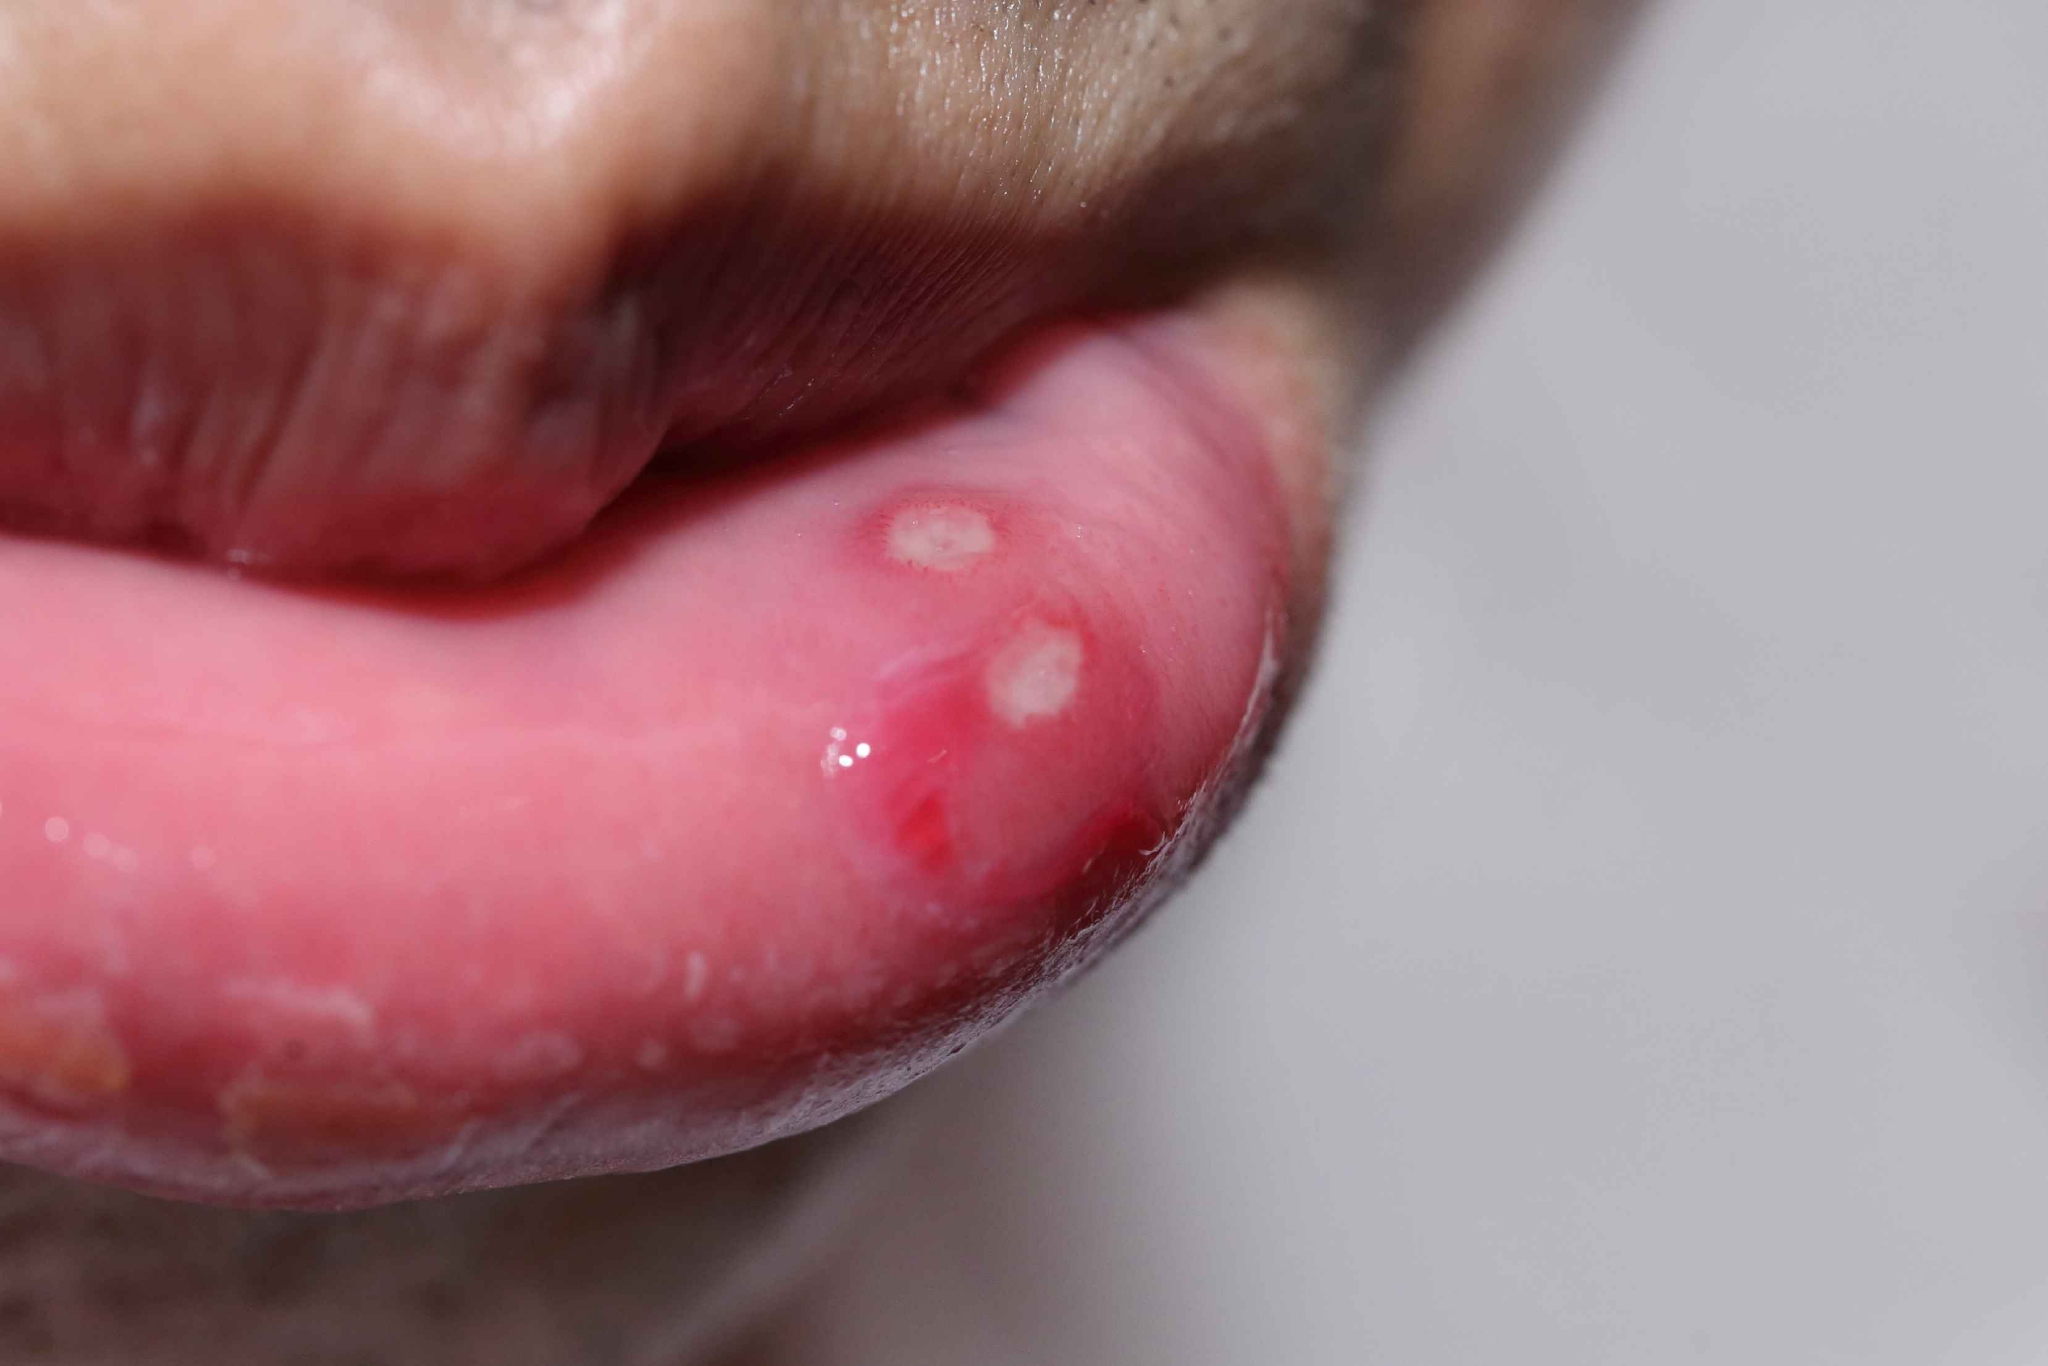 舌乳头炎治疗图片